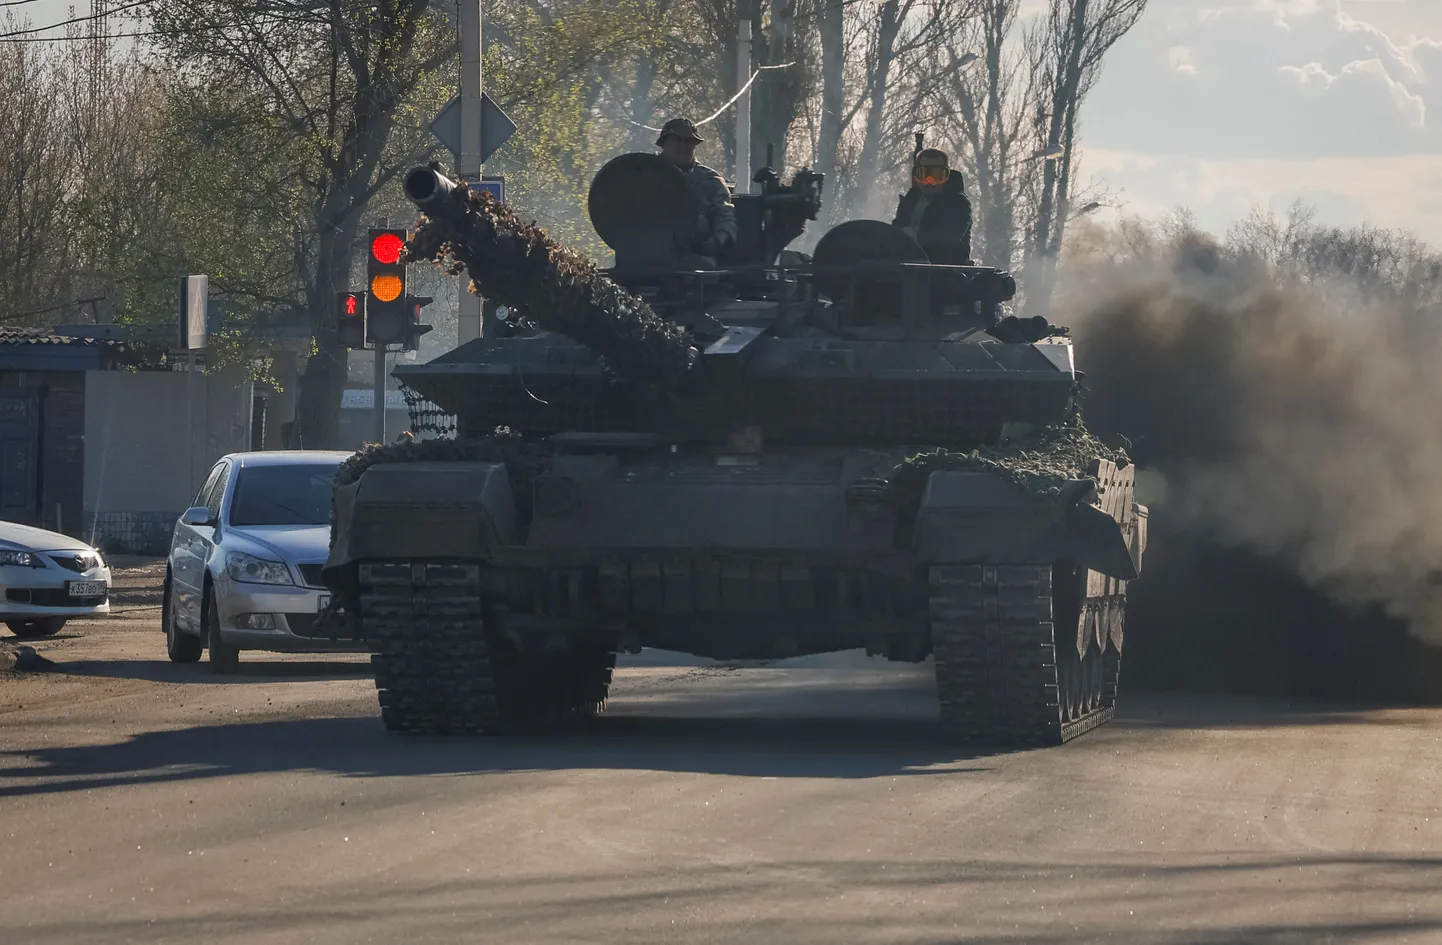 Vene sõjaväelased sõitmas tankiga Donetski tänaval.